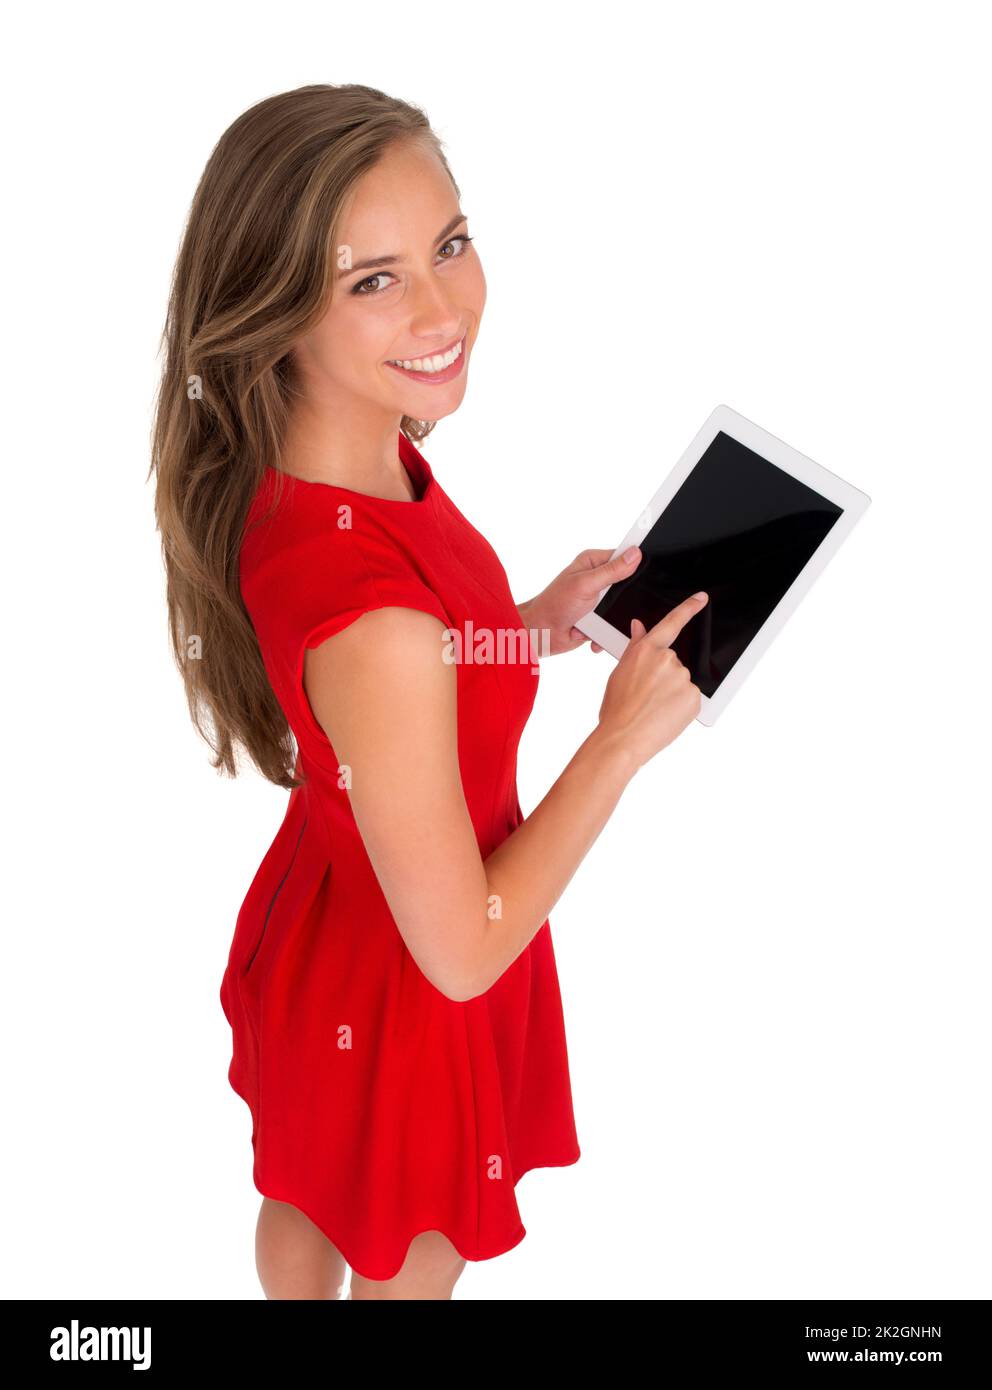 Je peux trouver tout ce dont j'ai besoin en ligne. Photo en grand angle d'une femme vêtue d'une robe rouge tenant une tablette numérique. Banque D'Images